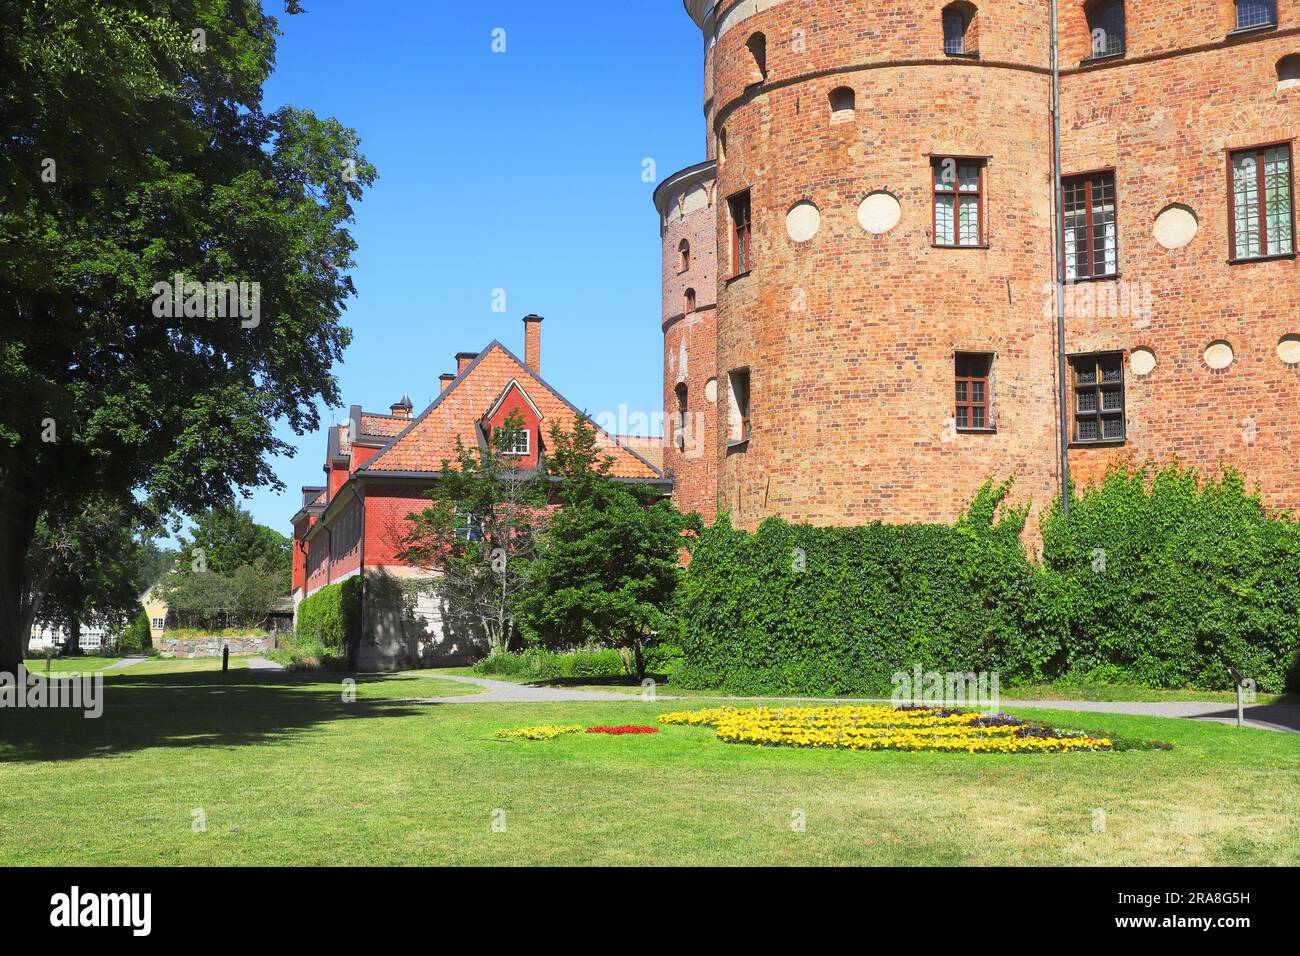 Le château Gripsholm datant du 16th siècle est situé dans la province suédoise de Sodermanland. Banque D'Images